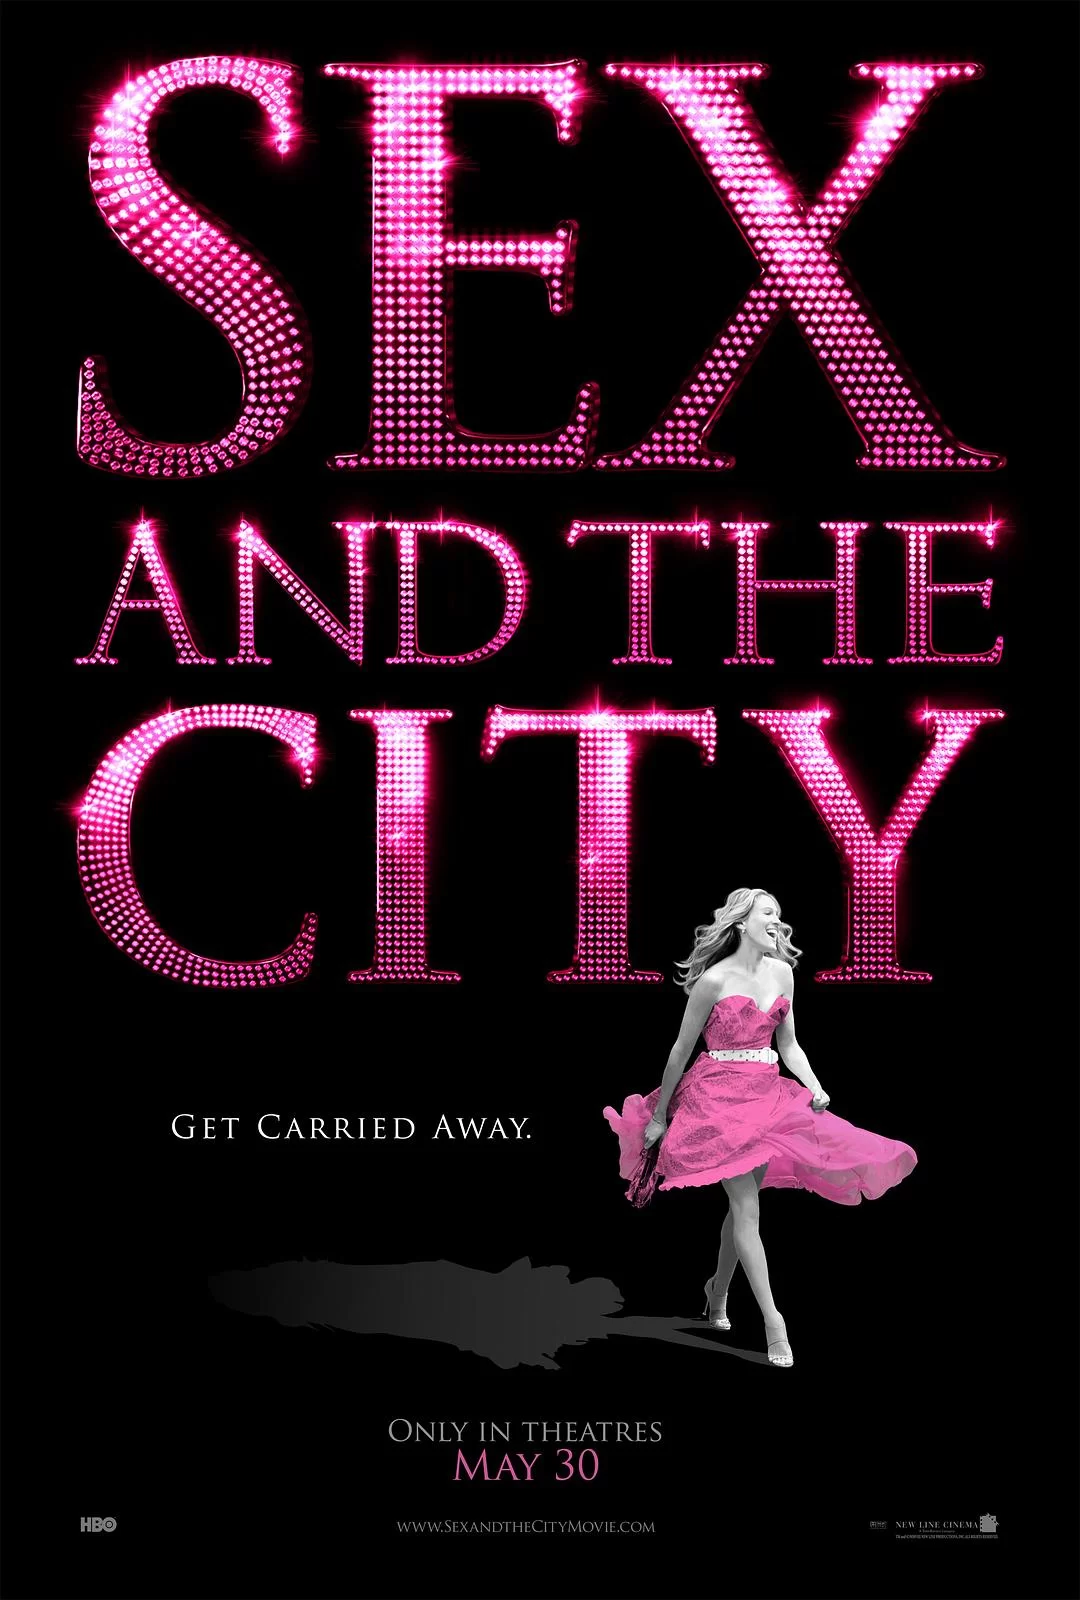 欲望都市 蓝光原盘下载+高清MKV版/色欲都市(港) / 欲望城市(台) / 欲望都市电影版 / Sex and the City: The Movie 2008 Sex and the City 39.8G